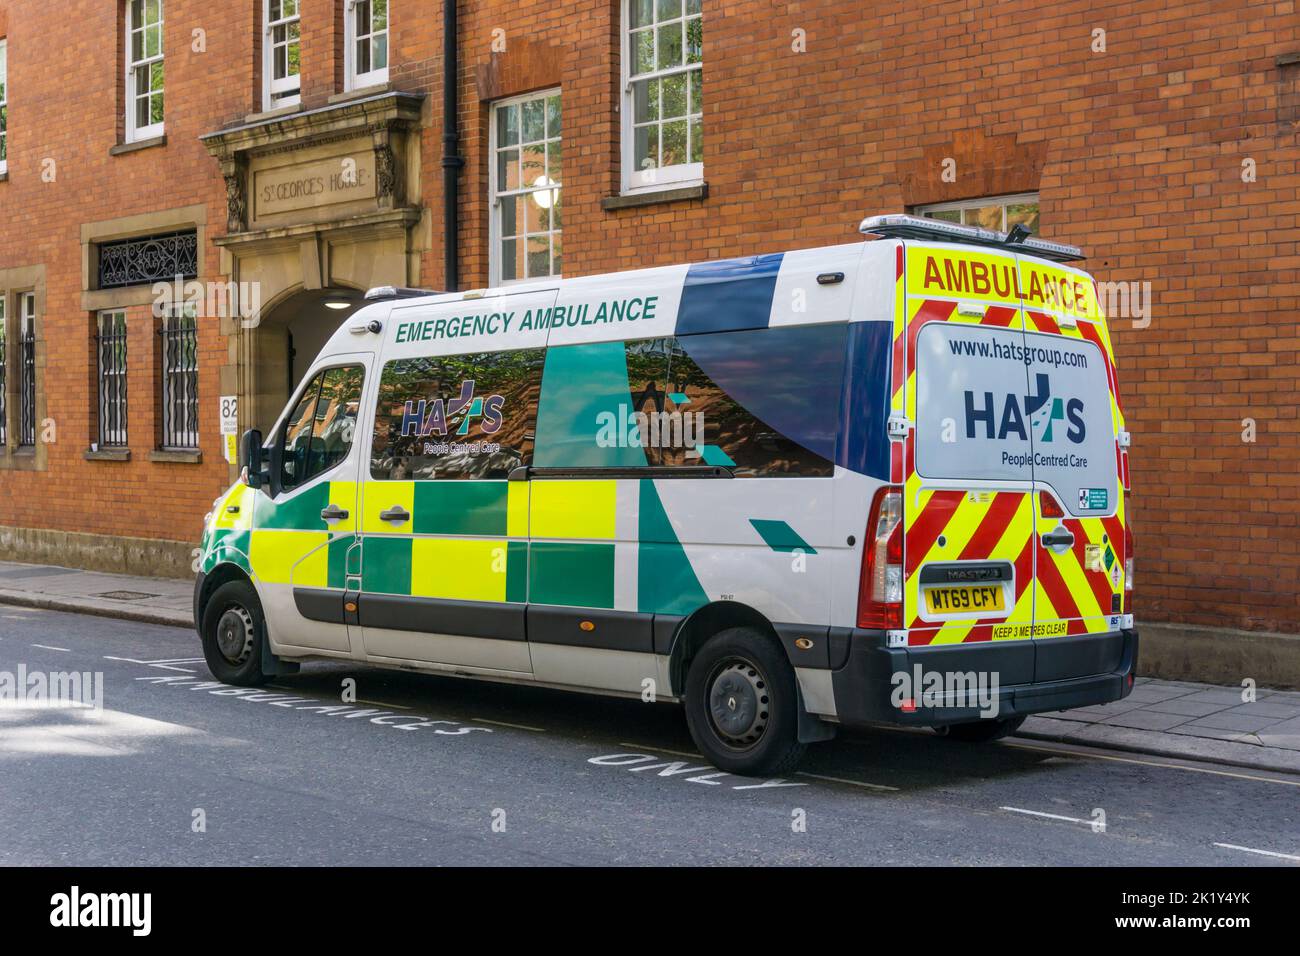 Une ambulance d'urgence privée de groupe DE CHAPEAUX à l'extérieur du South Westminster Health Centre, près de Victoria, Londres. Banque D'Images